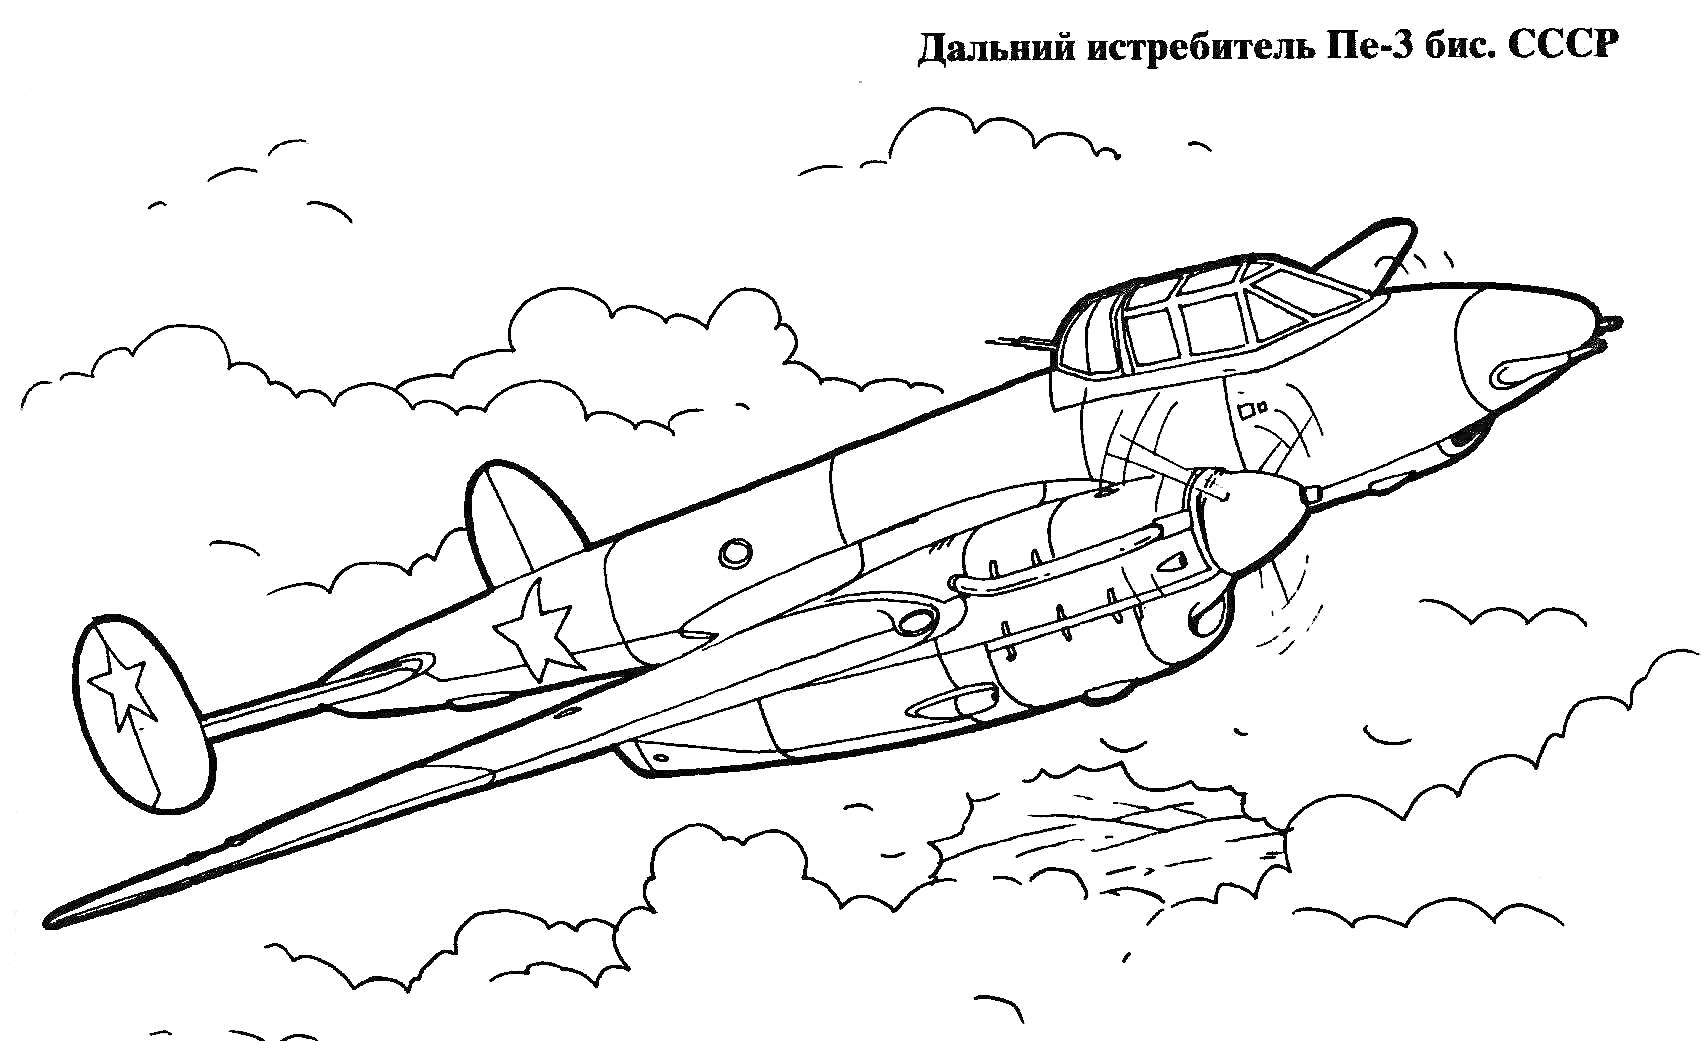 Дальний истребитель Пе-3 бис. СССР. Летящий в облаках.